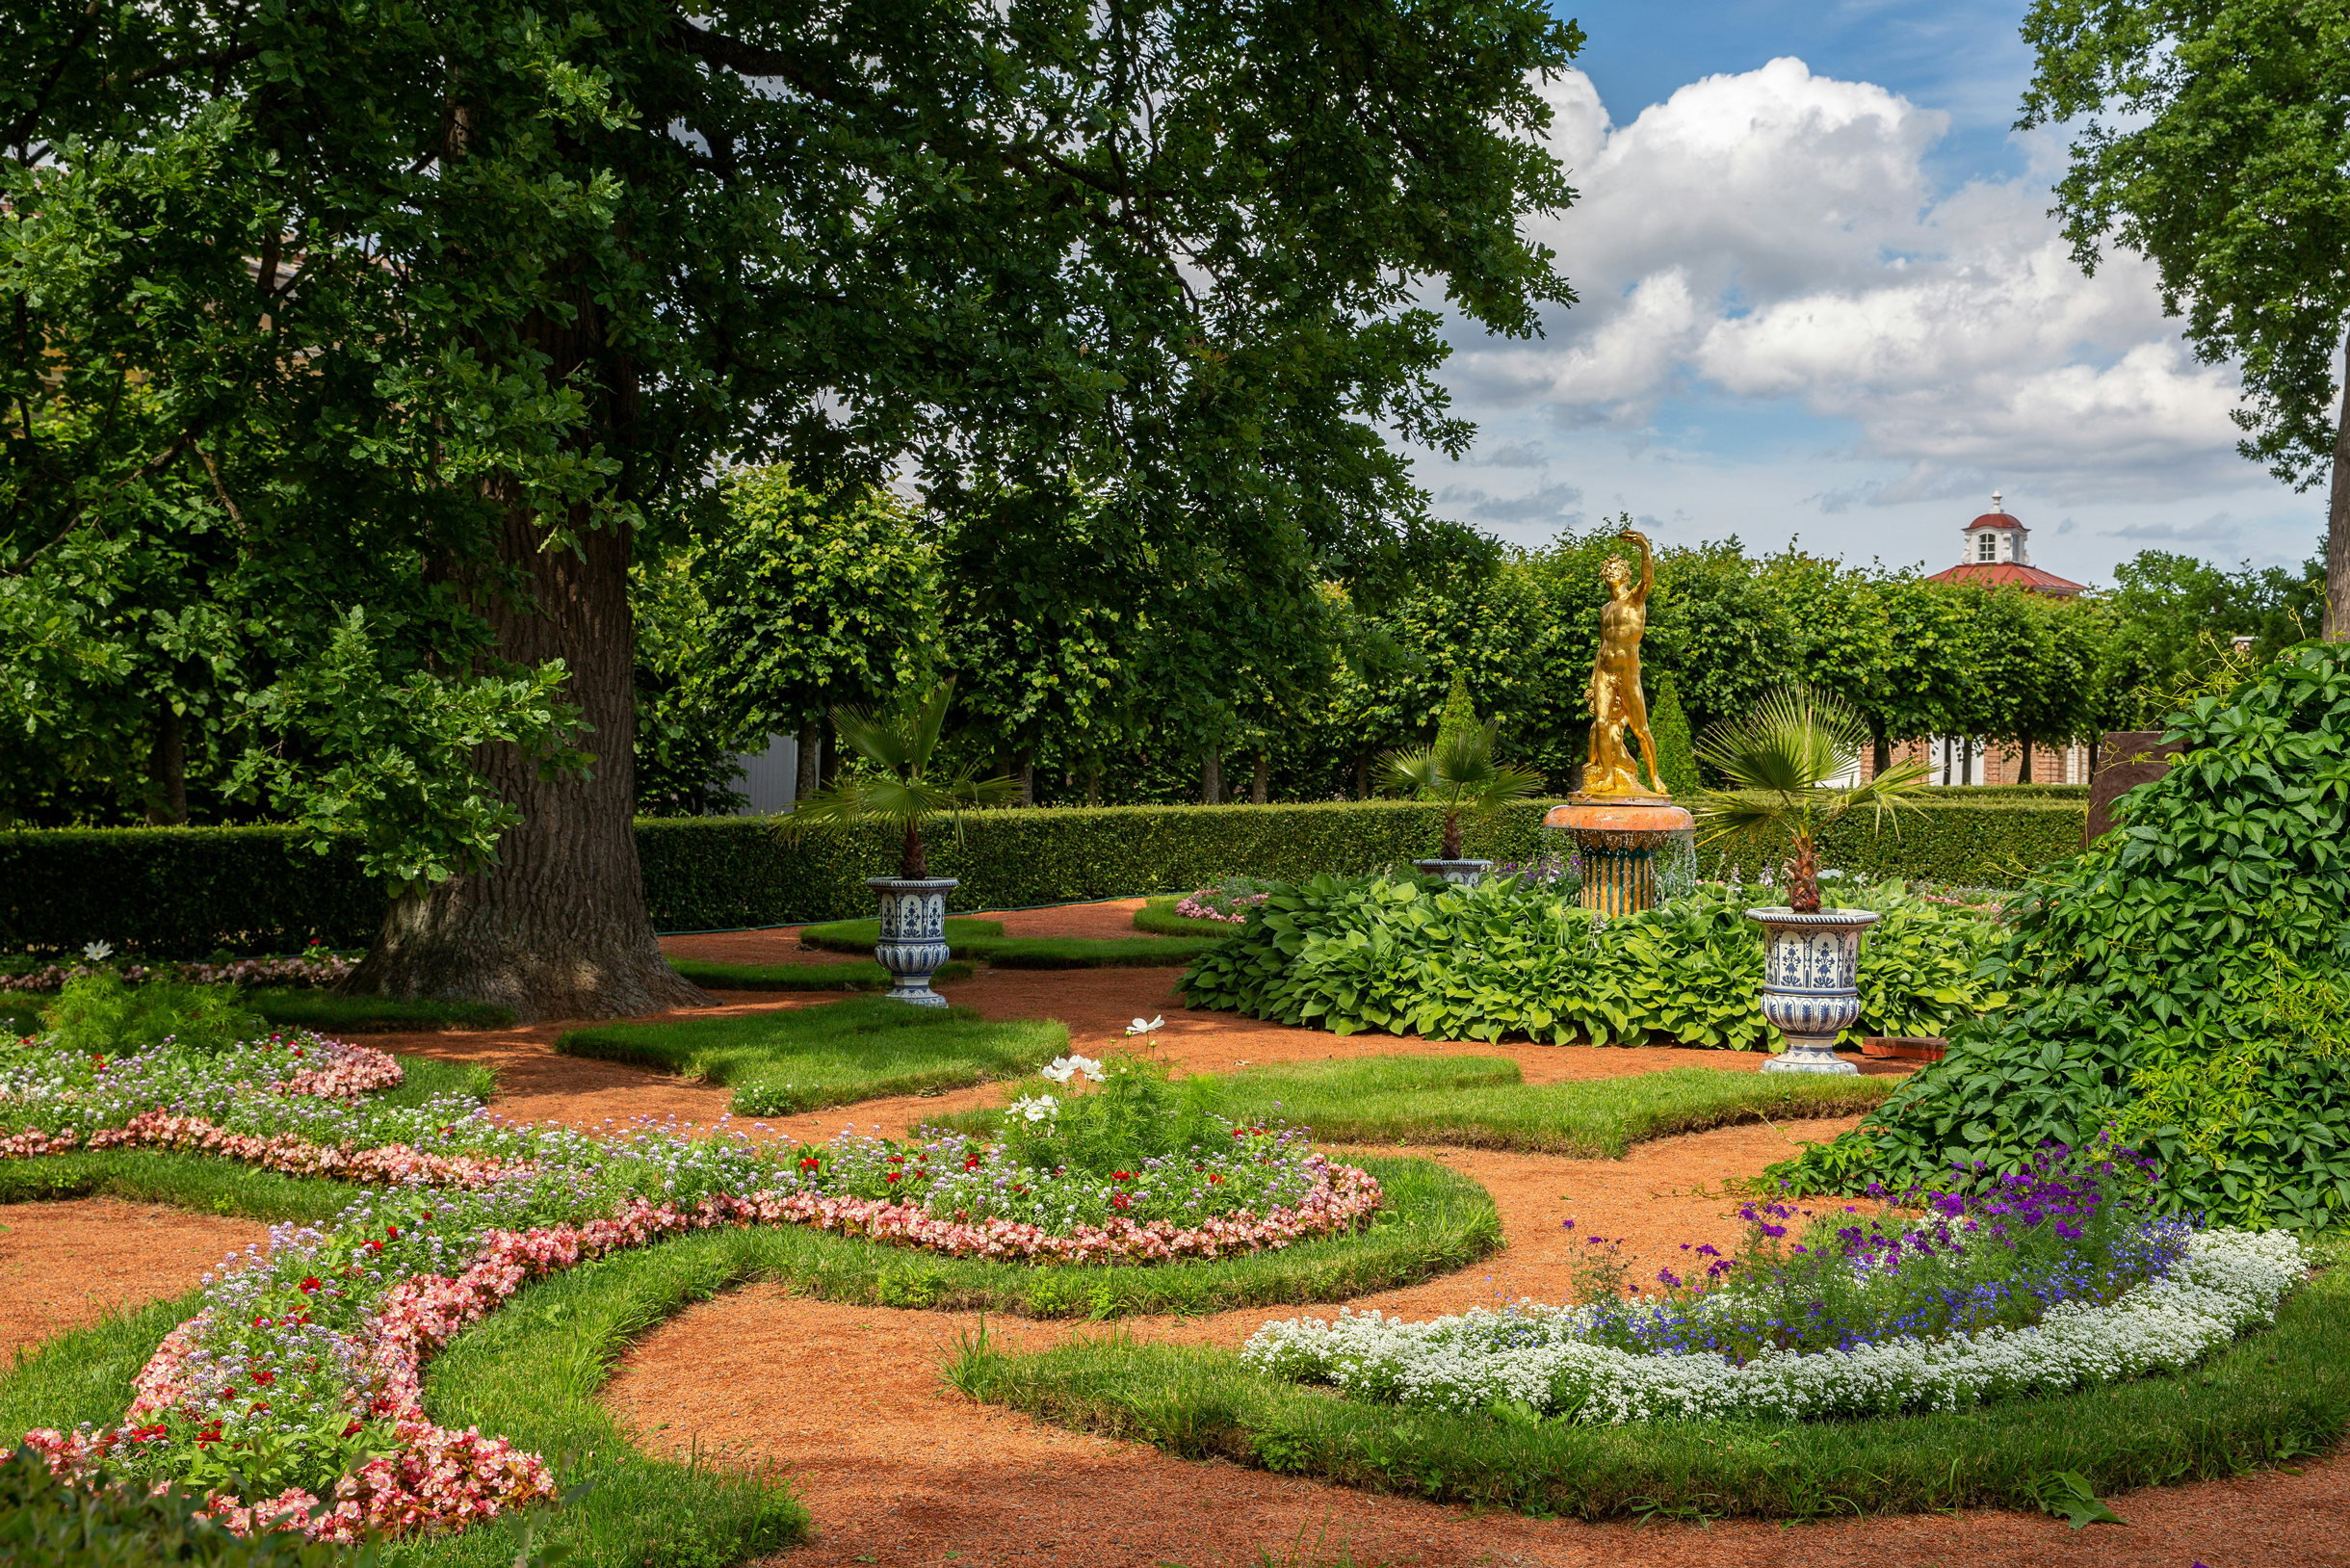 Строение парка в Петергофе повторяет идеи Версаля: та же осевая линия и симметрия, похожее цветочное оформление и использование вазонов для тропических деревьев. Фотография: Sergey Mind / Unsplash